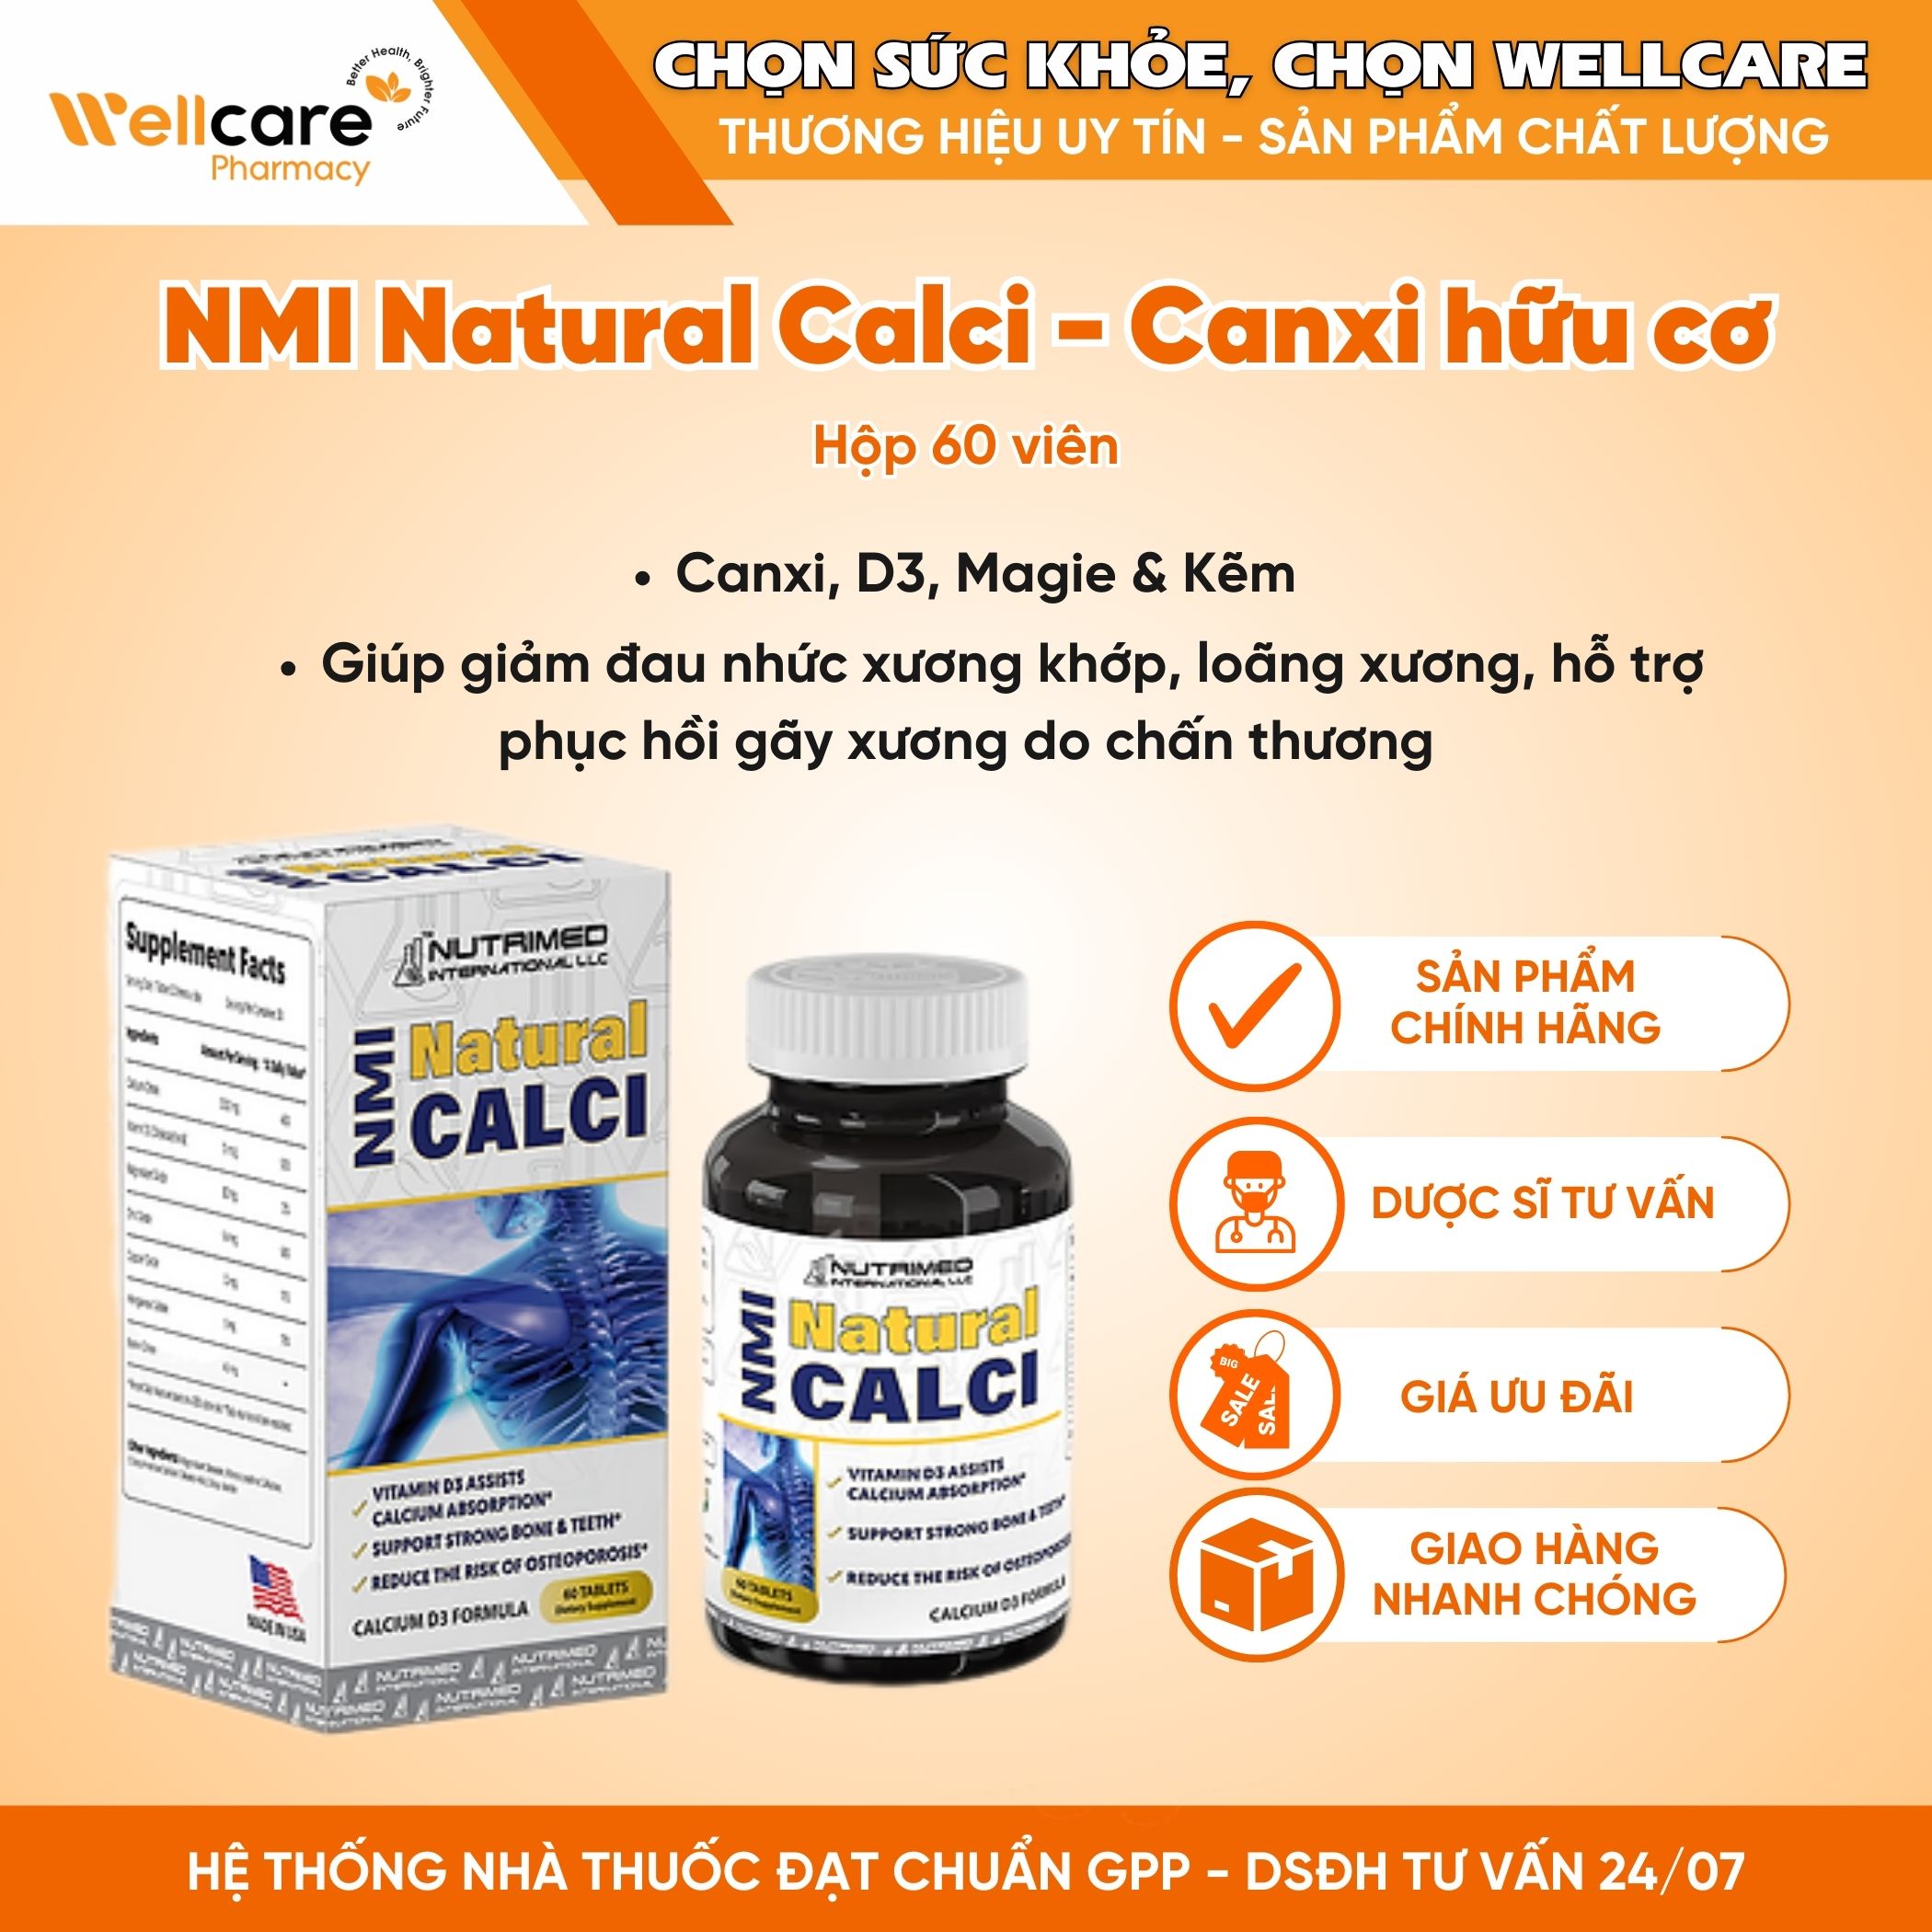 NMI Natural Calci – Viên uống hỗ trợ xương răng chắc khỏe, giảm nguy cơ loãng xương (Hộp 60 viên)